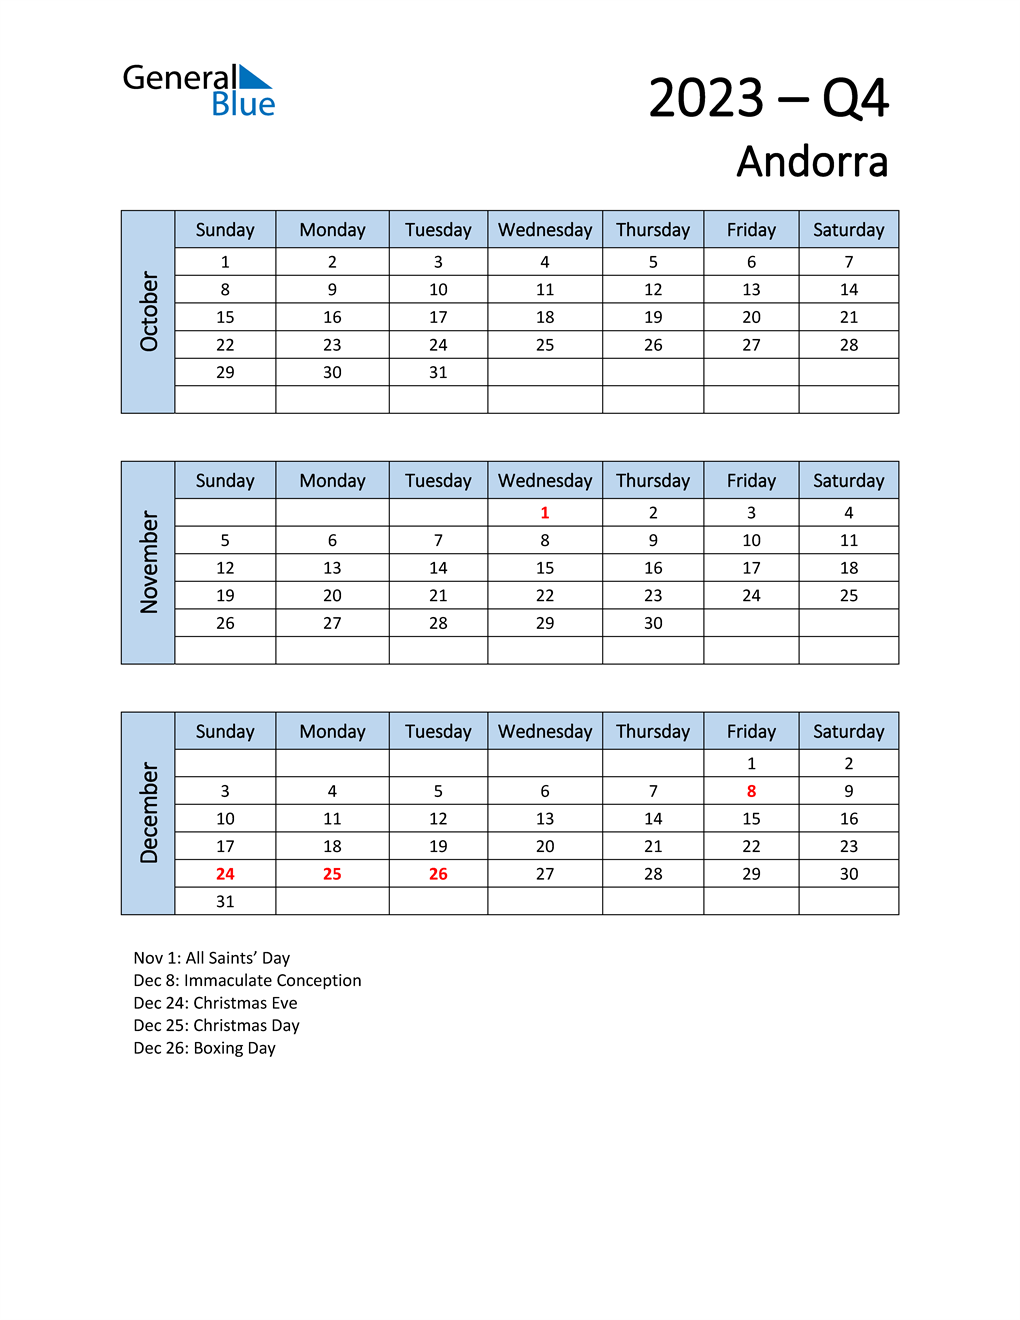  Free Q4 2023 Calendar for Andorra